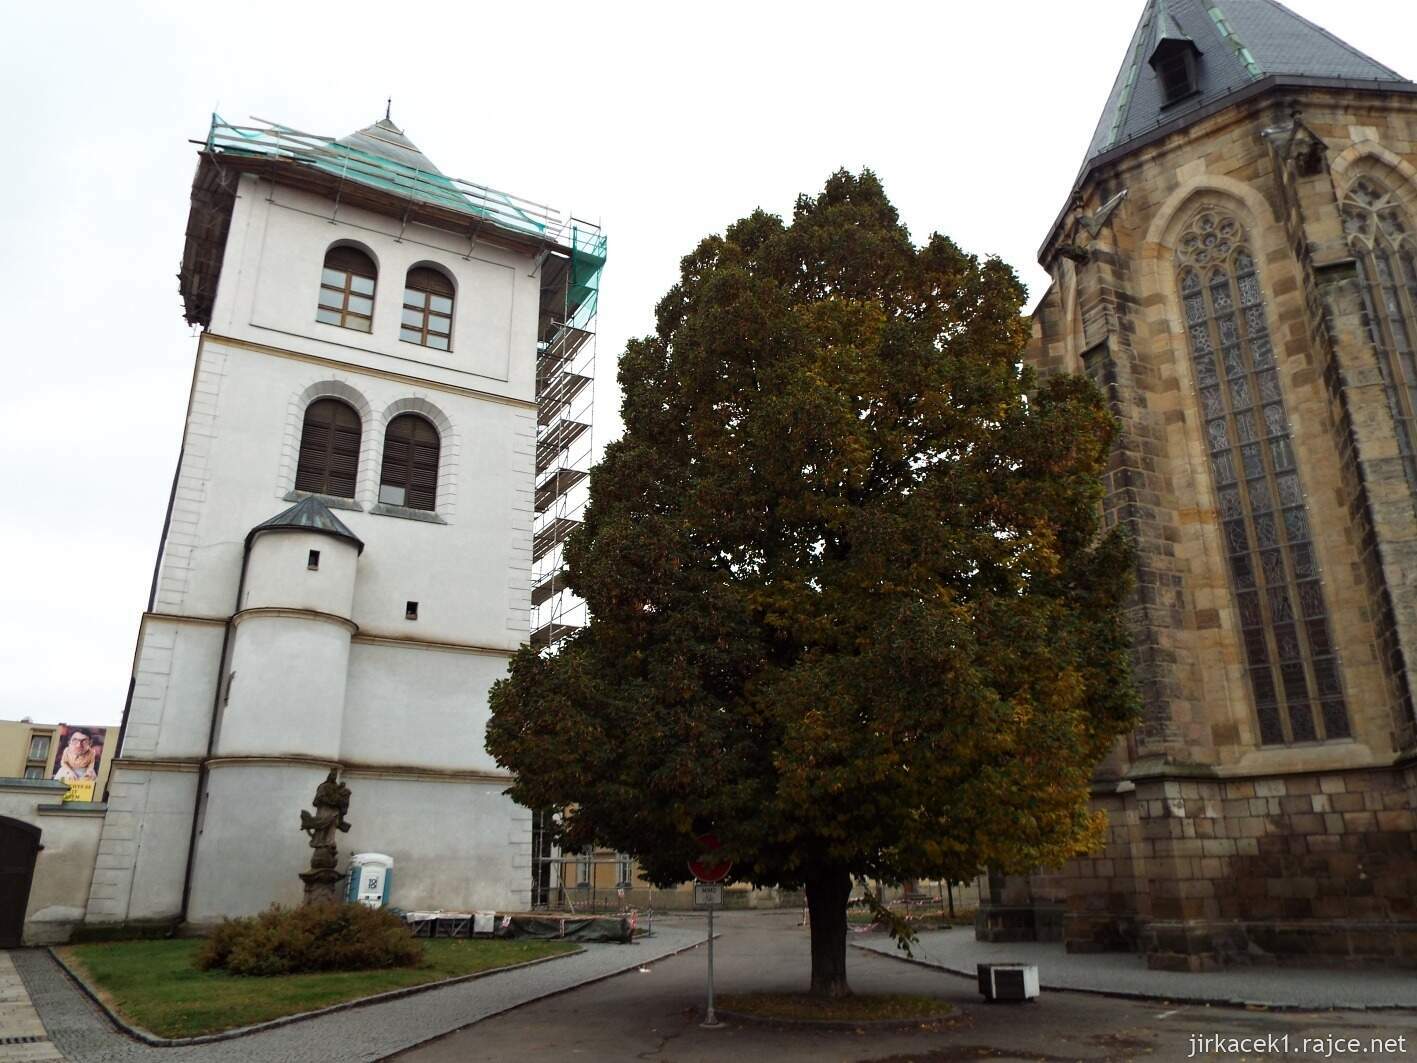 G - Vysoké Mýto - Kostel sv. Vavřince 18 - zadní pohled a zvonice